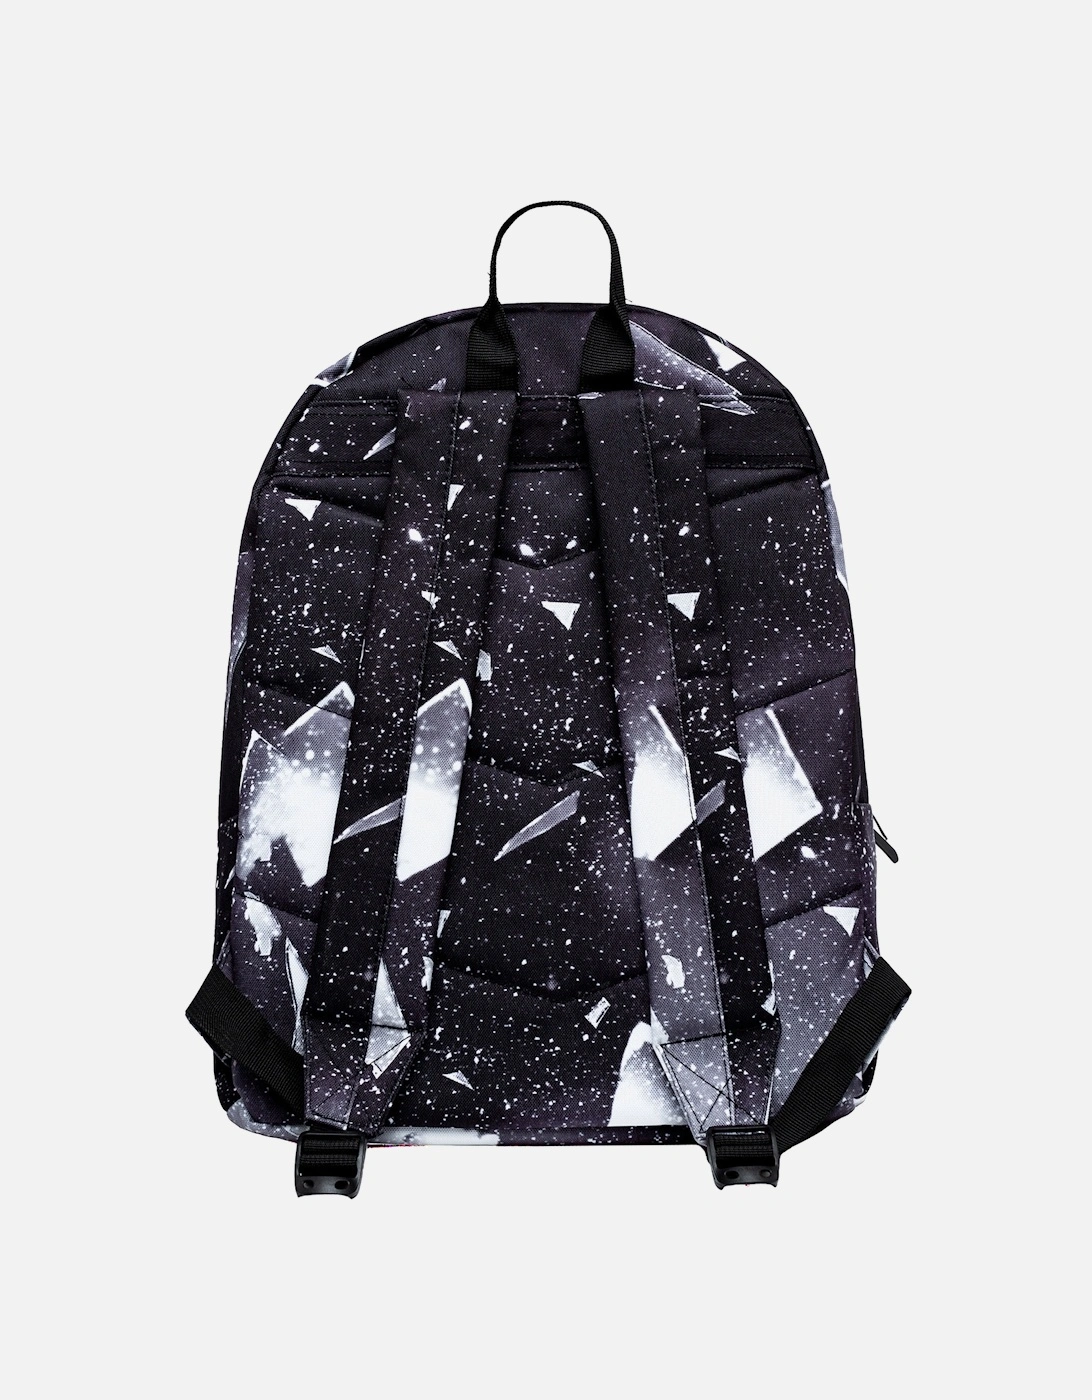 White Explosion Print Backpack (Black)